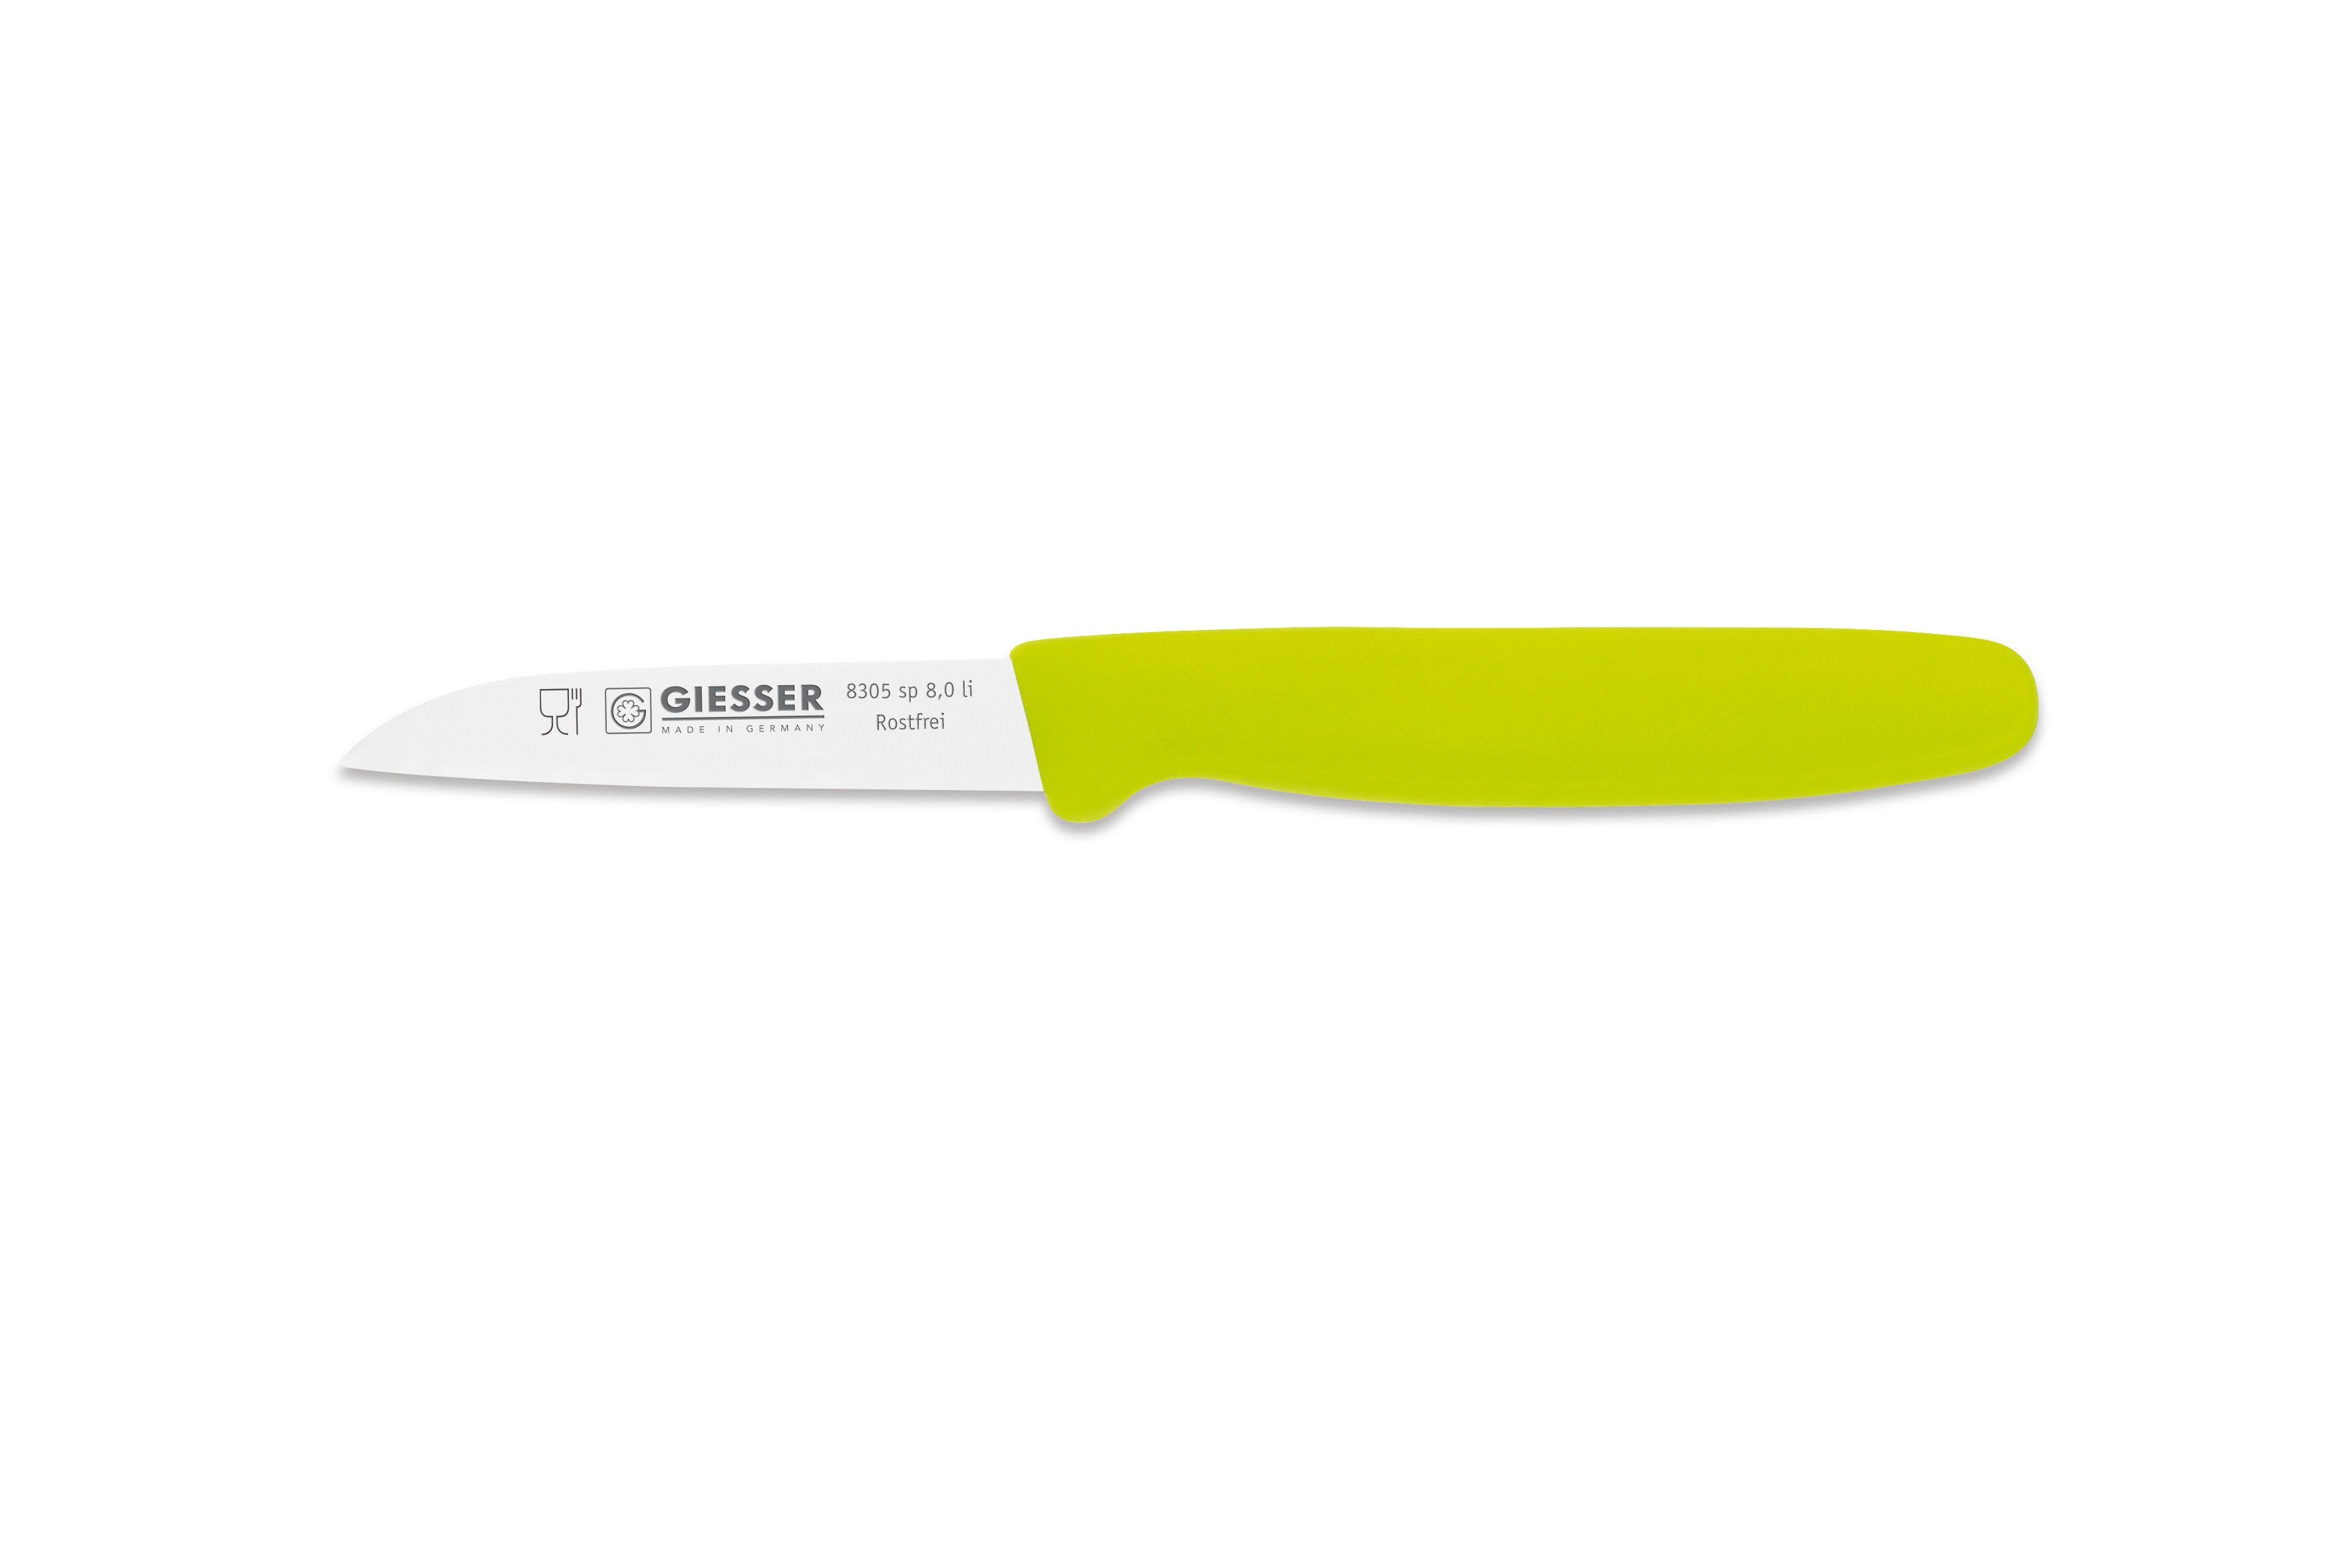 Giesser Messer Made gerade Farben, alle Germany Limette sp Schneide 8 8 in cm, Gemüsemesser Küchenmesser Küchenmesser 8305